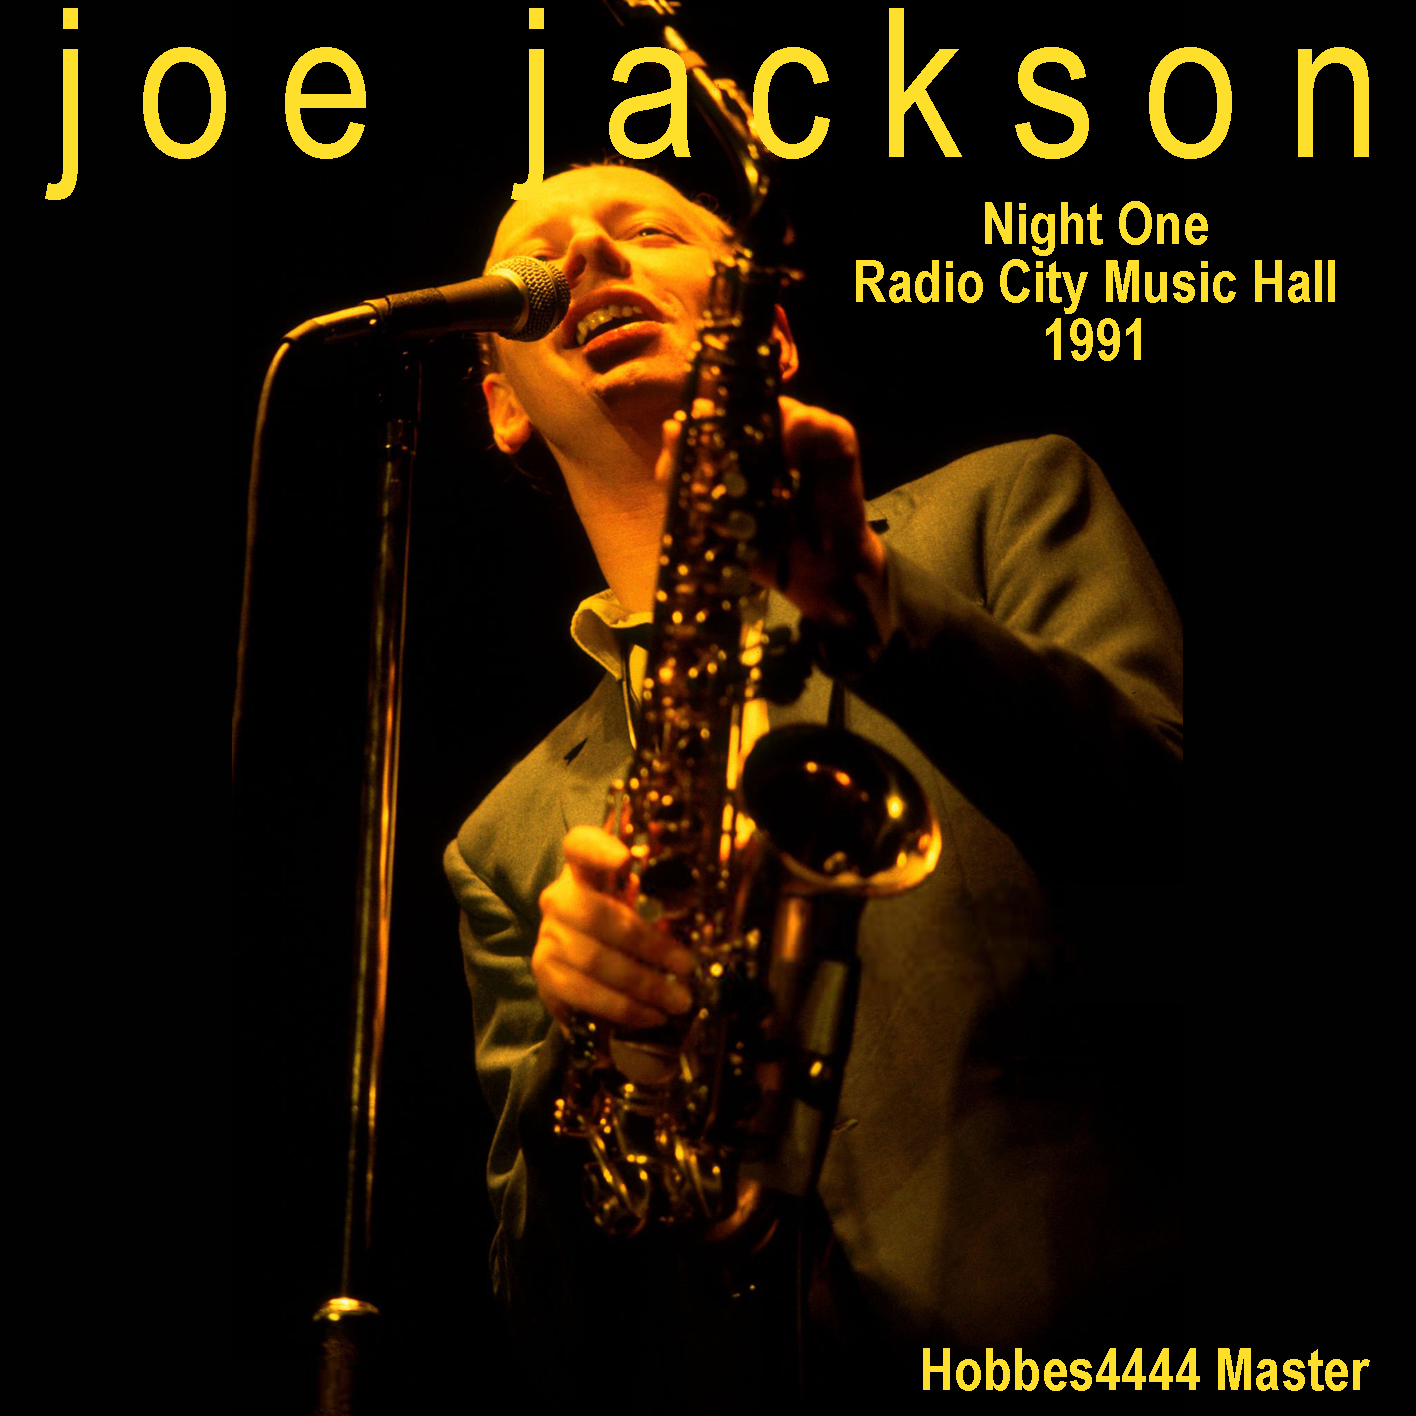 JoeJackson1991-07-15RadioCityMusicHallNYC (1).jpg